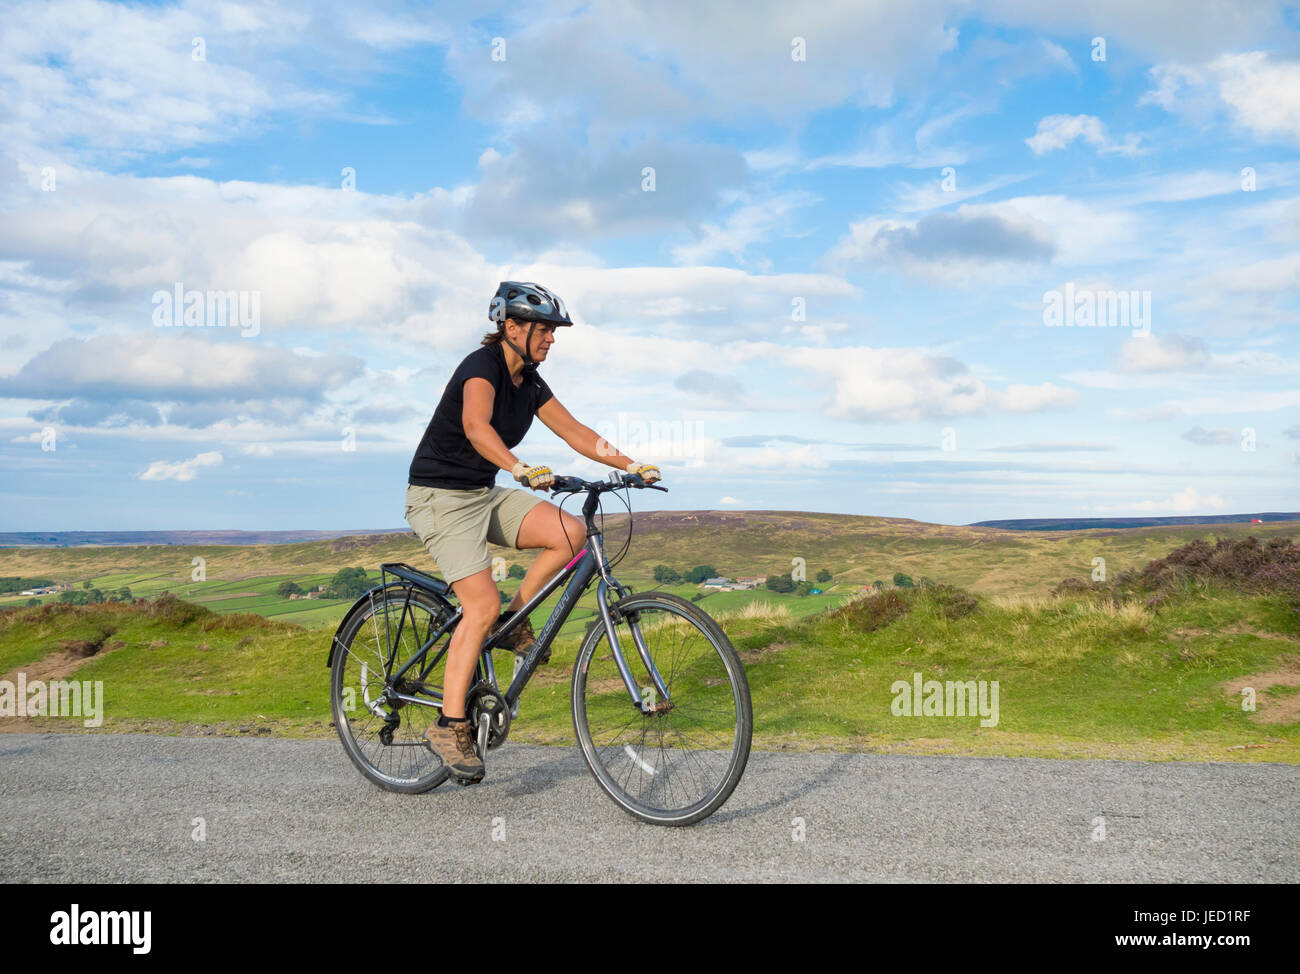 Cycliste féminine près de westerdale dans le North York Moors national park. North Yorkshire, Angleterre Royaume-Uni. Banque D'Images